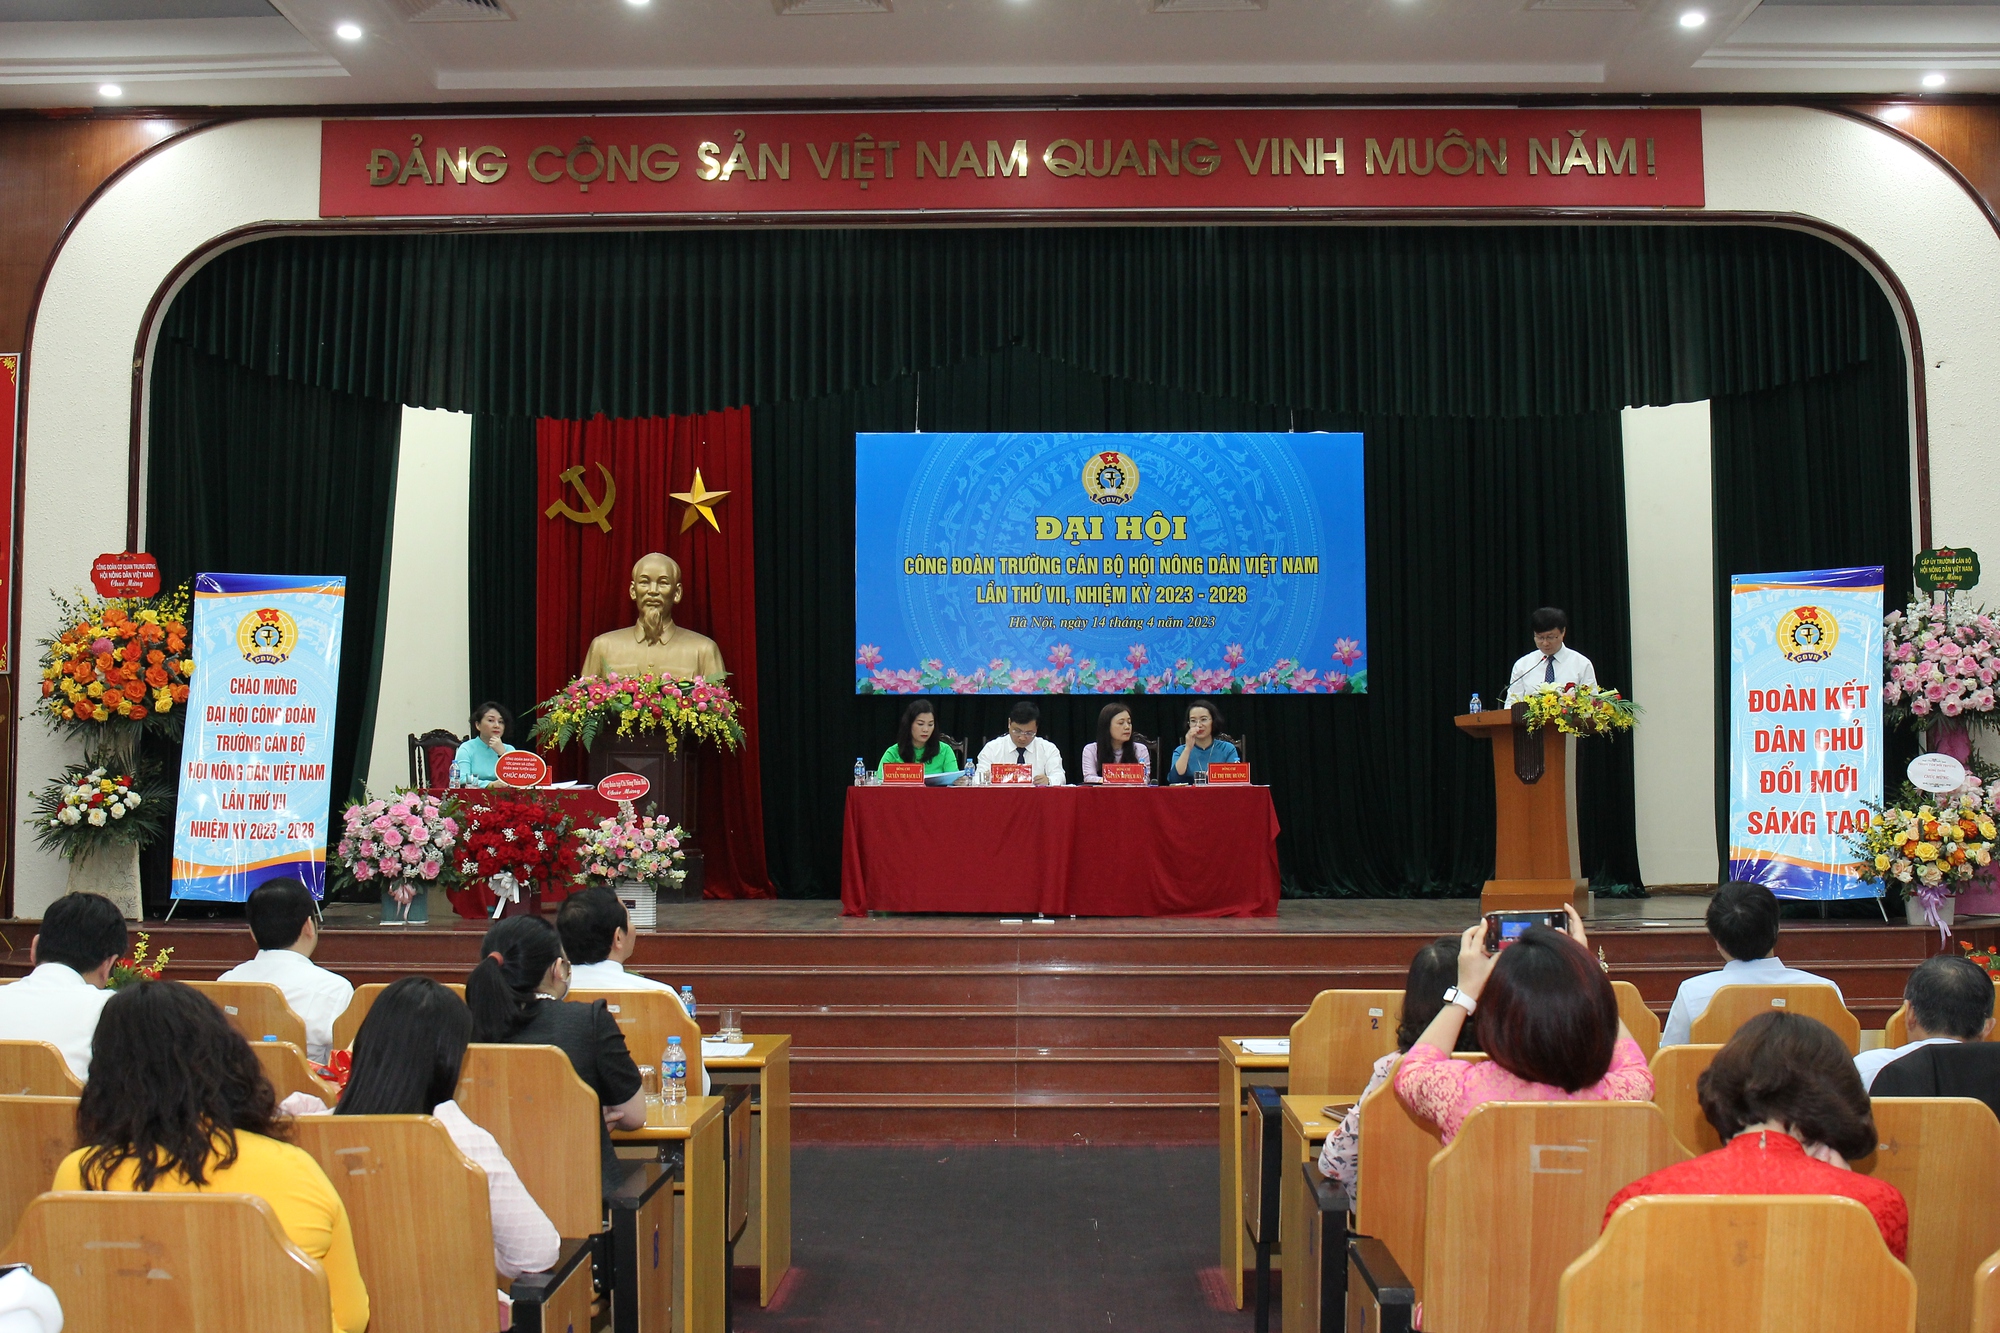 Công đoàn Trường cán bộ Hội Nông dân Việt Nam tổ chức thành công Đại hội khóa VII, nhiệm kỳ 2018-2023 - Ảnh 1.